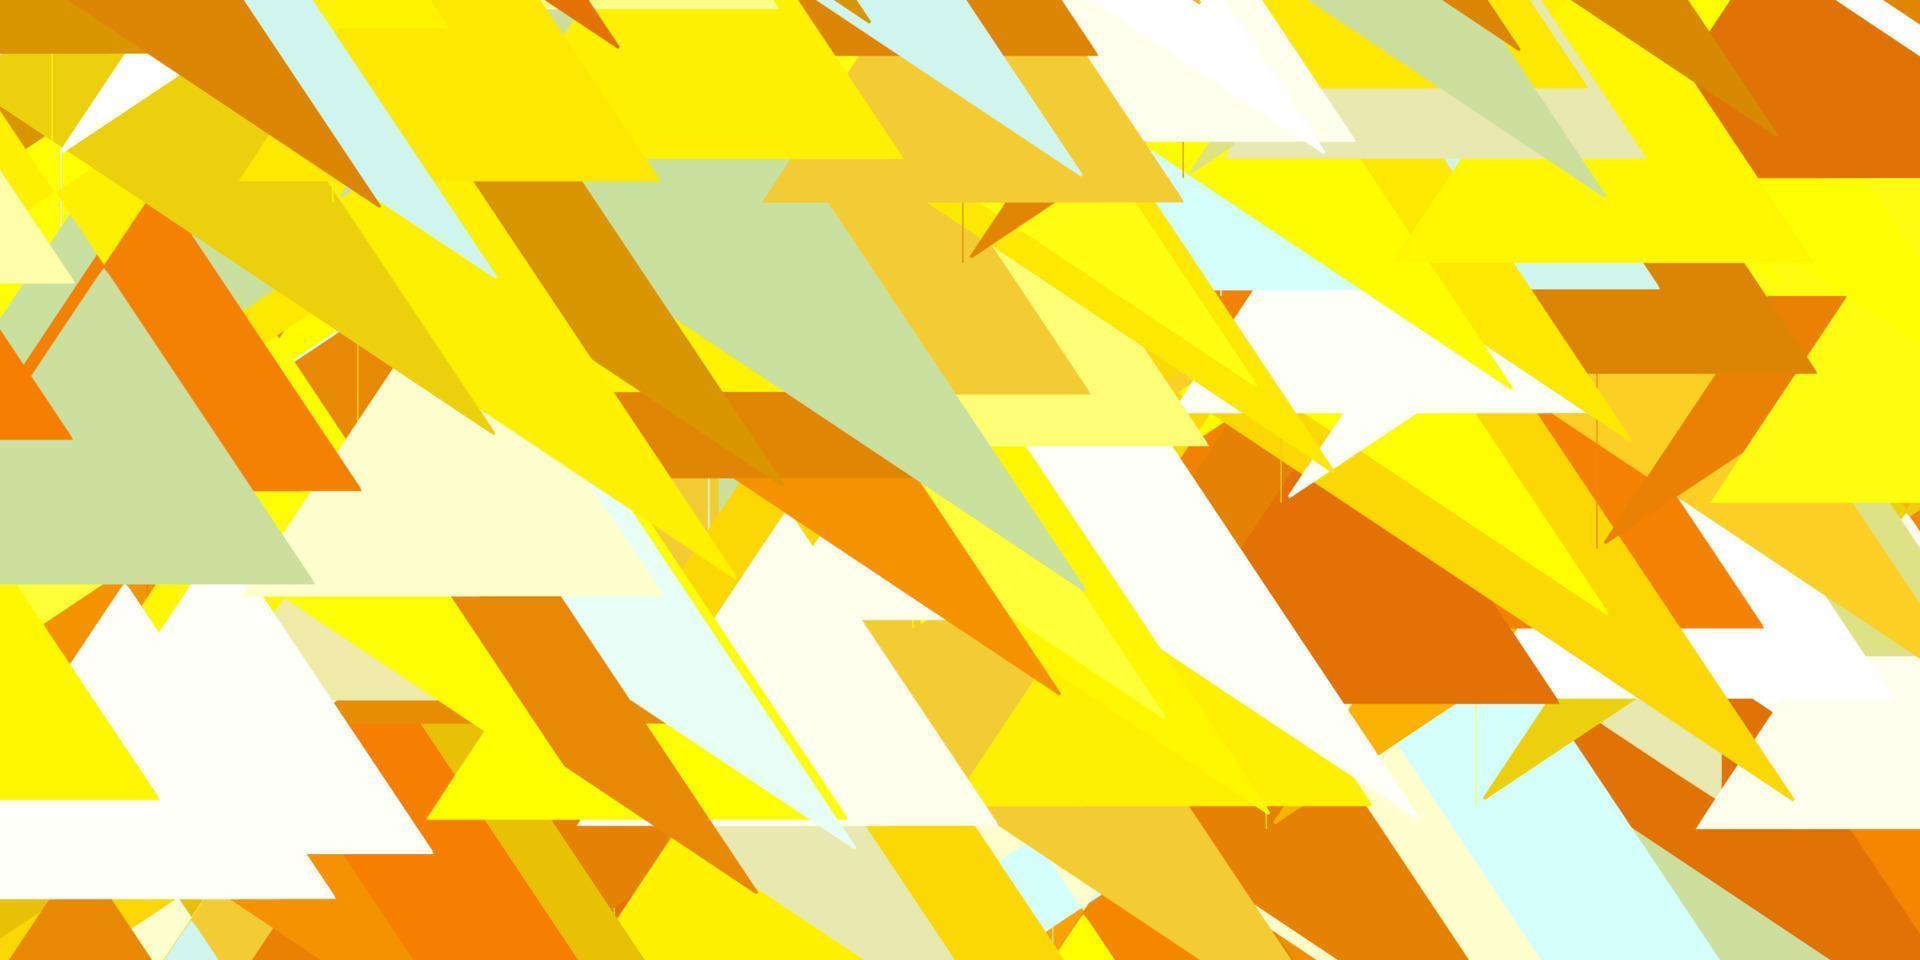 padrão de vetor azul e amarelo claro com formas poligonais.